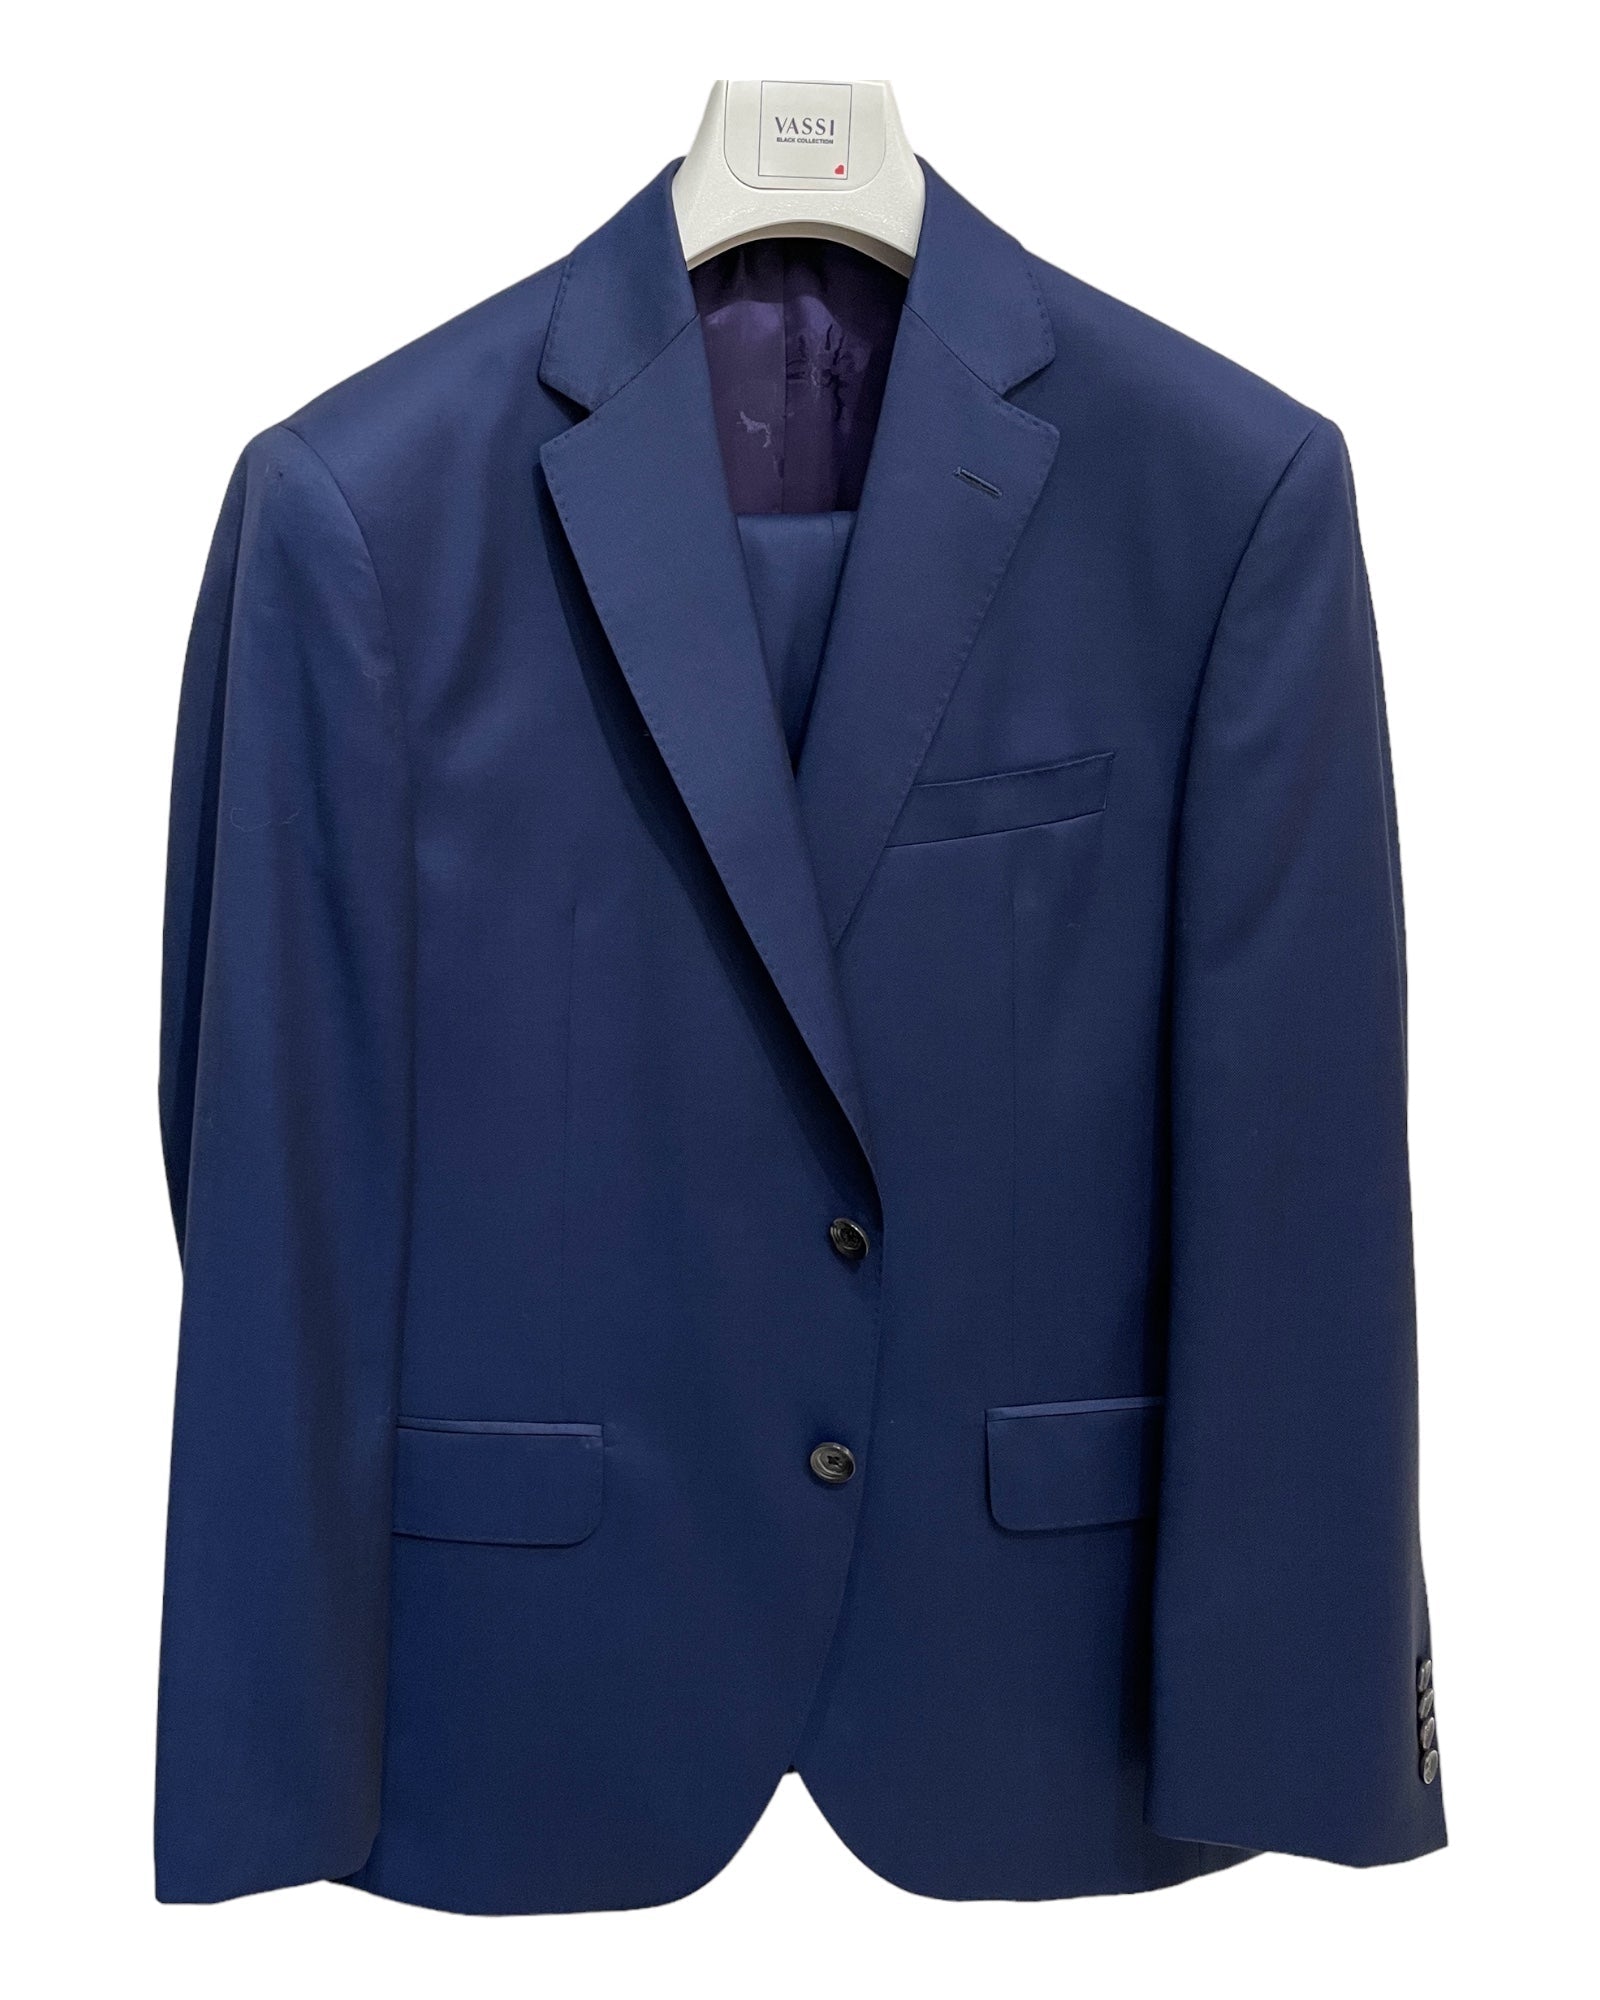 Super 120's Wool Suit - Navy Blue SUITS38S